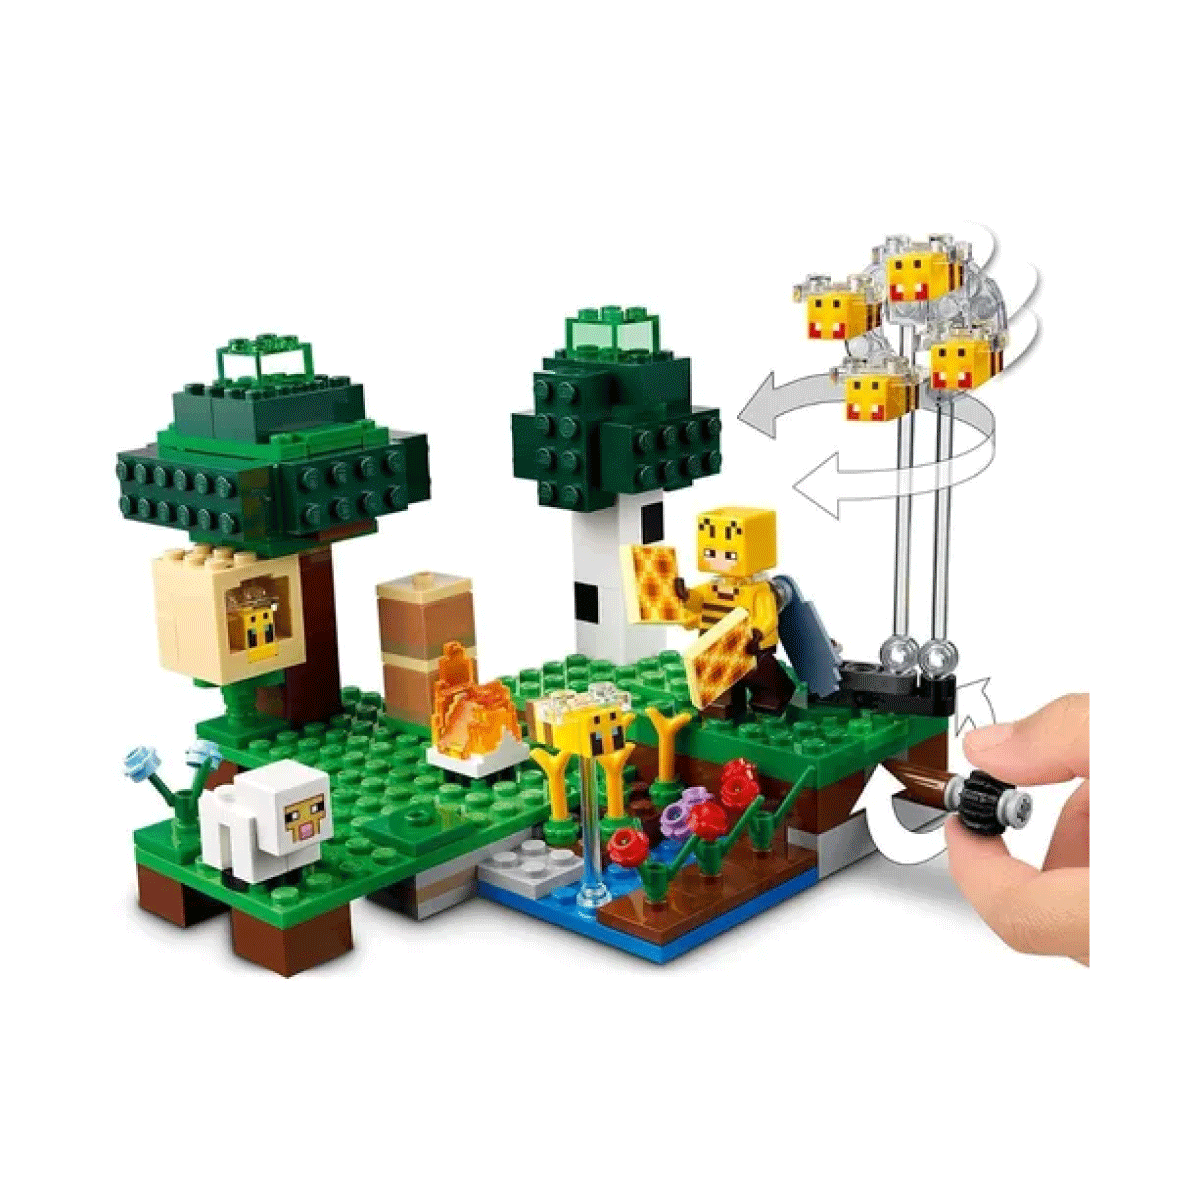 The Bee Farm Lego